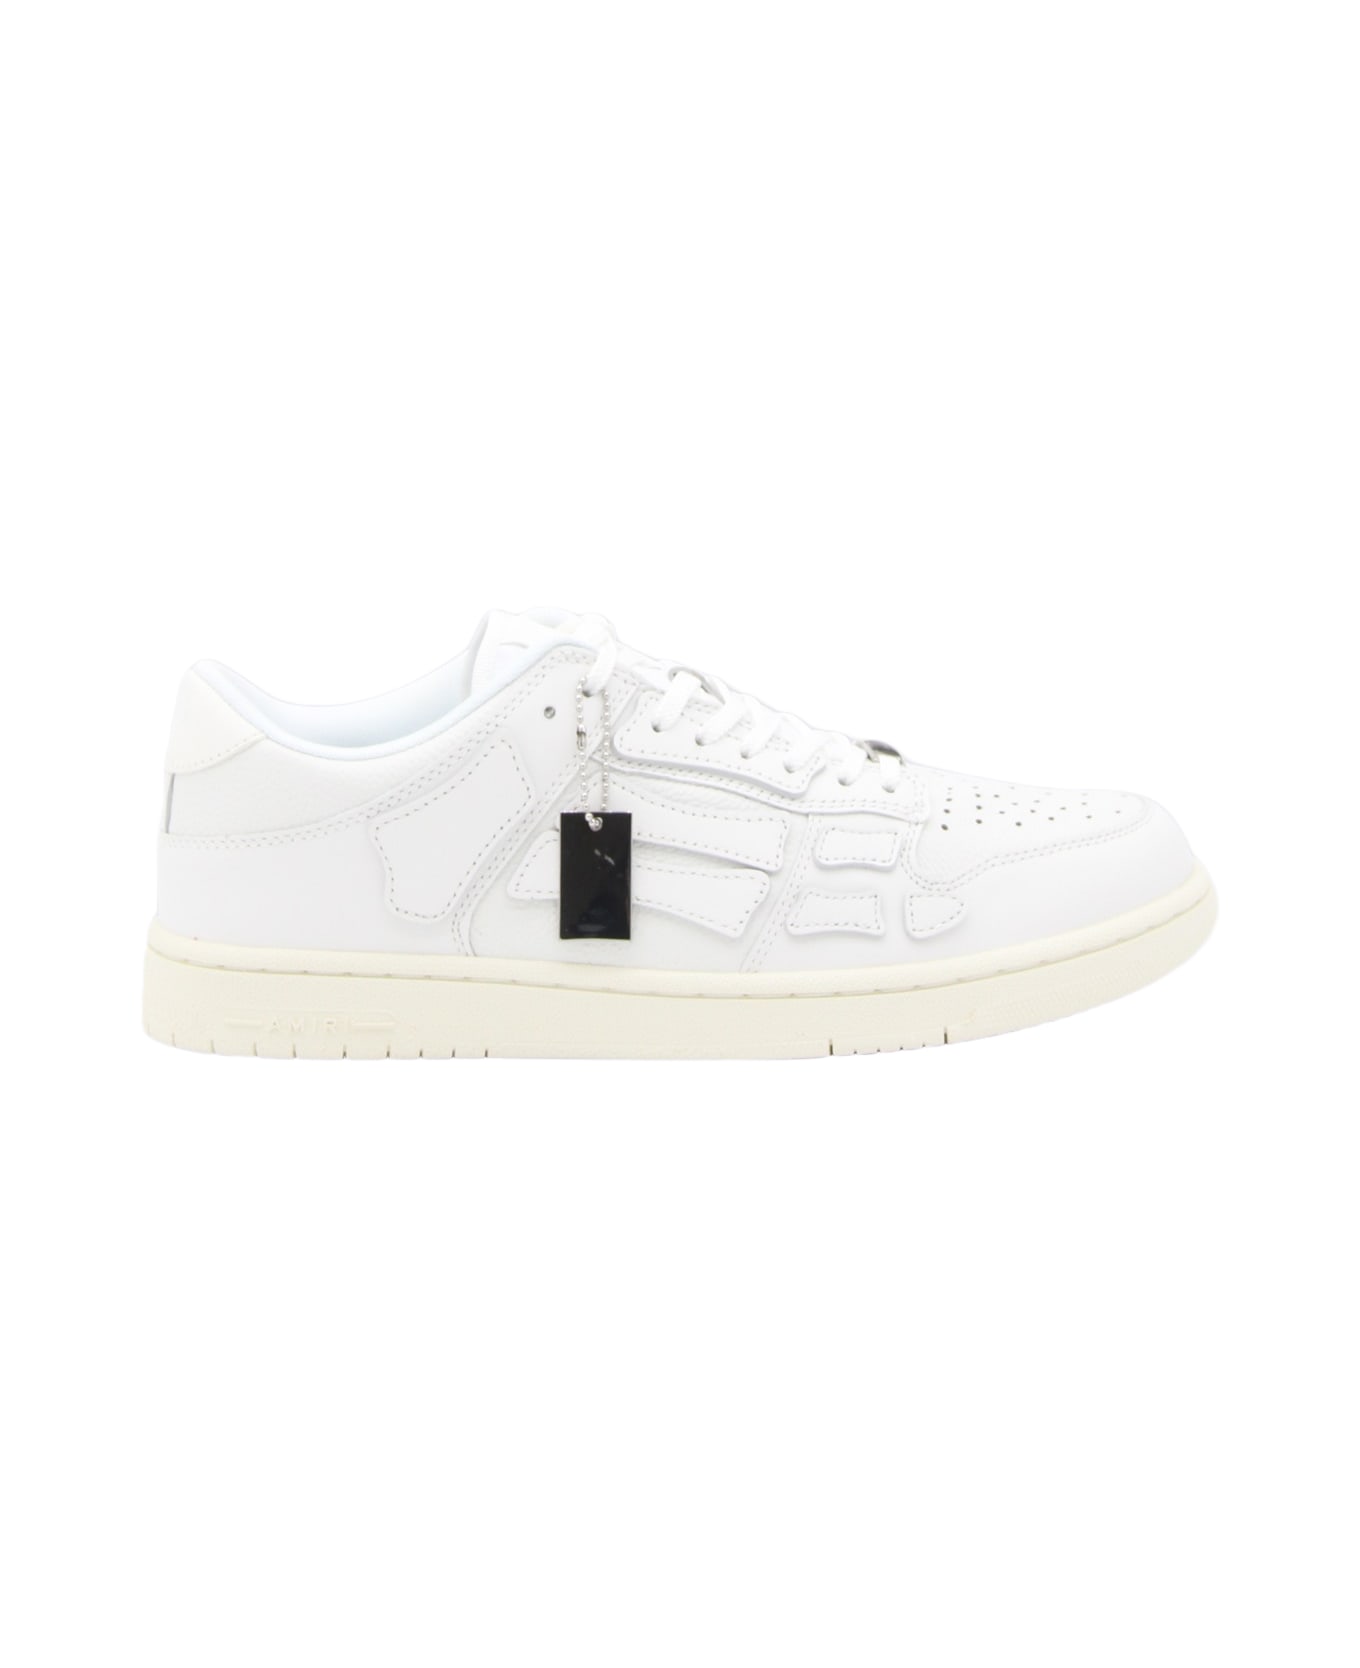 AMIRI White Leather Skel Sneakers - WHITE/WHITE スニーカー